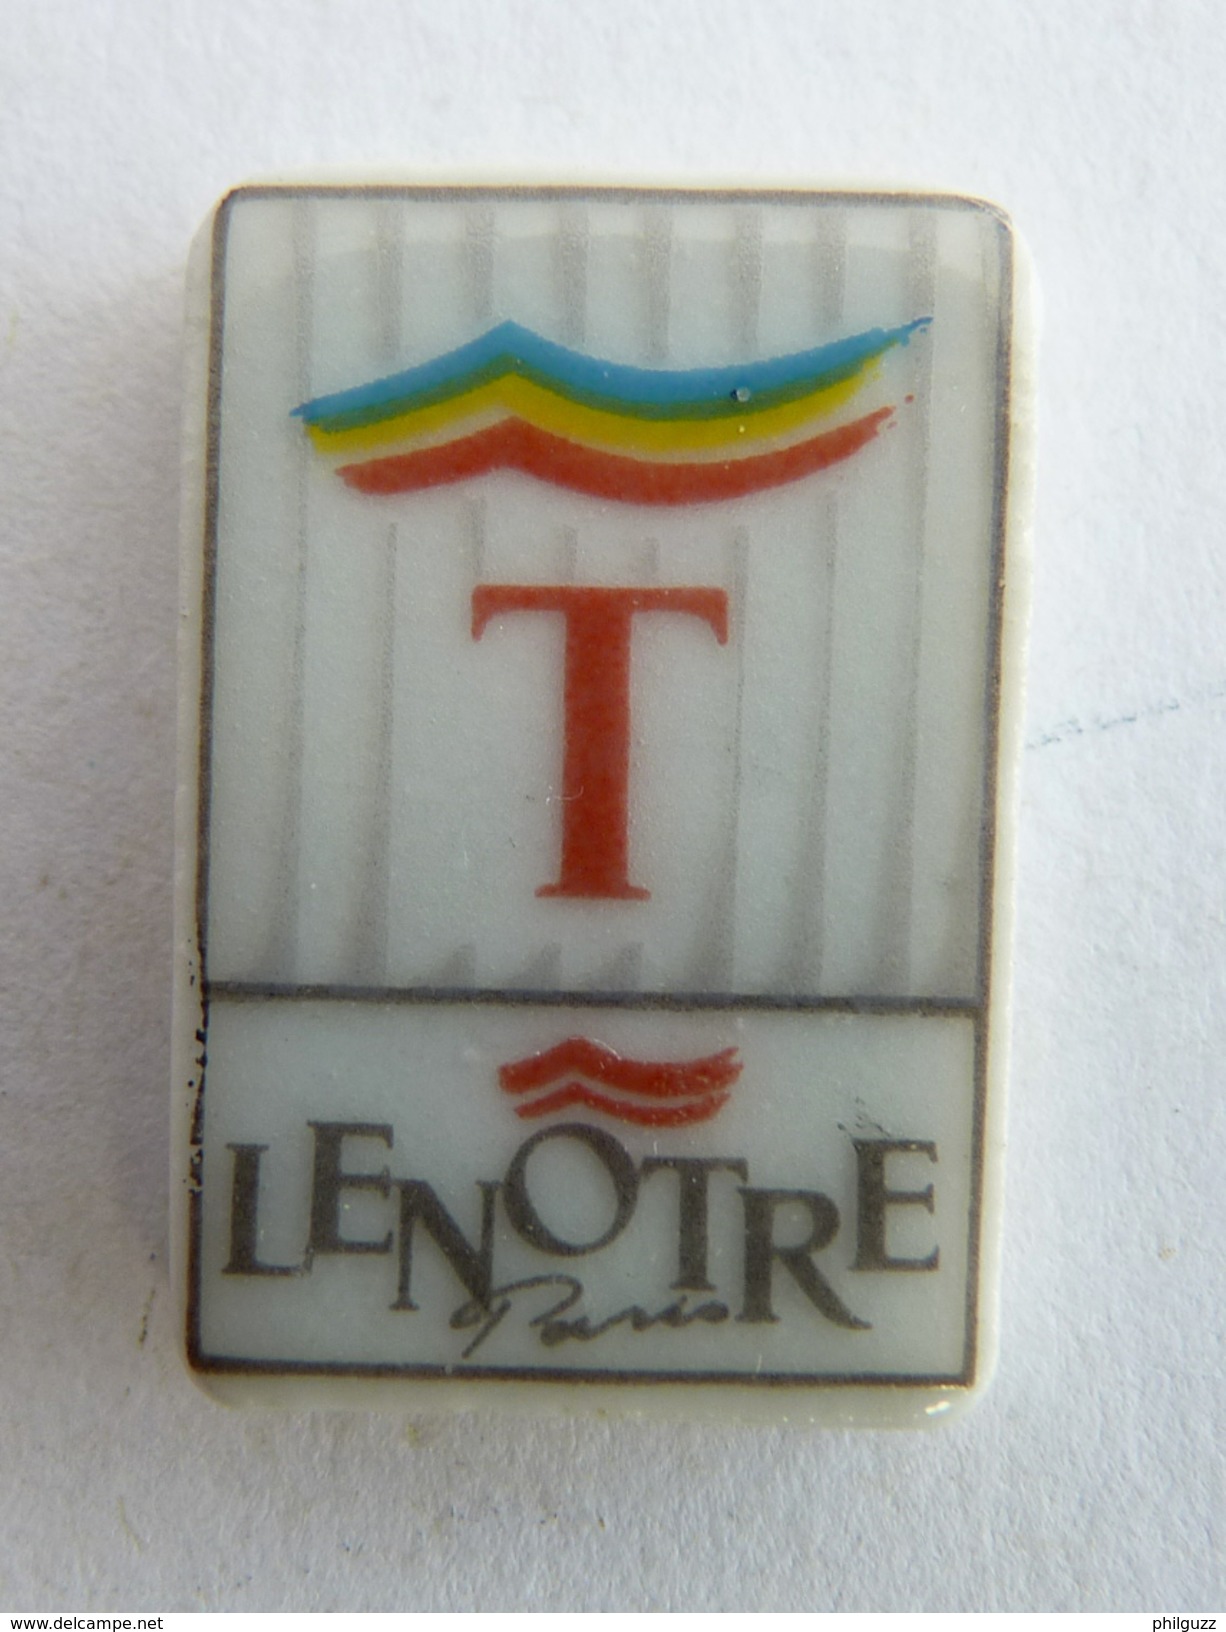 FEVE PUBLICITAIRE PERSO - LENÖTRE 1991 LETTRE T (1) - Frühe Figuren